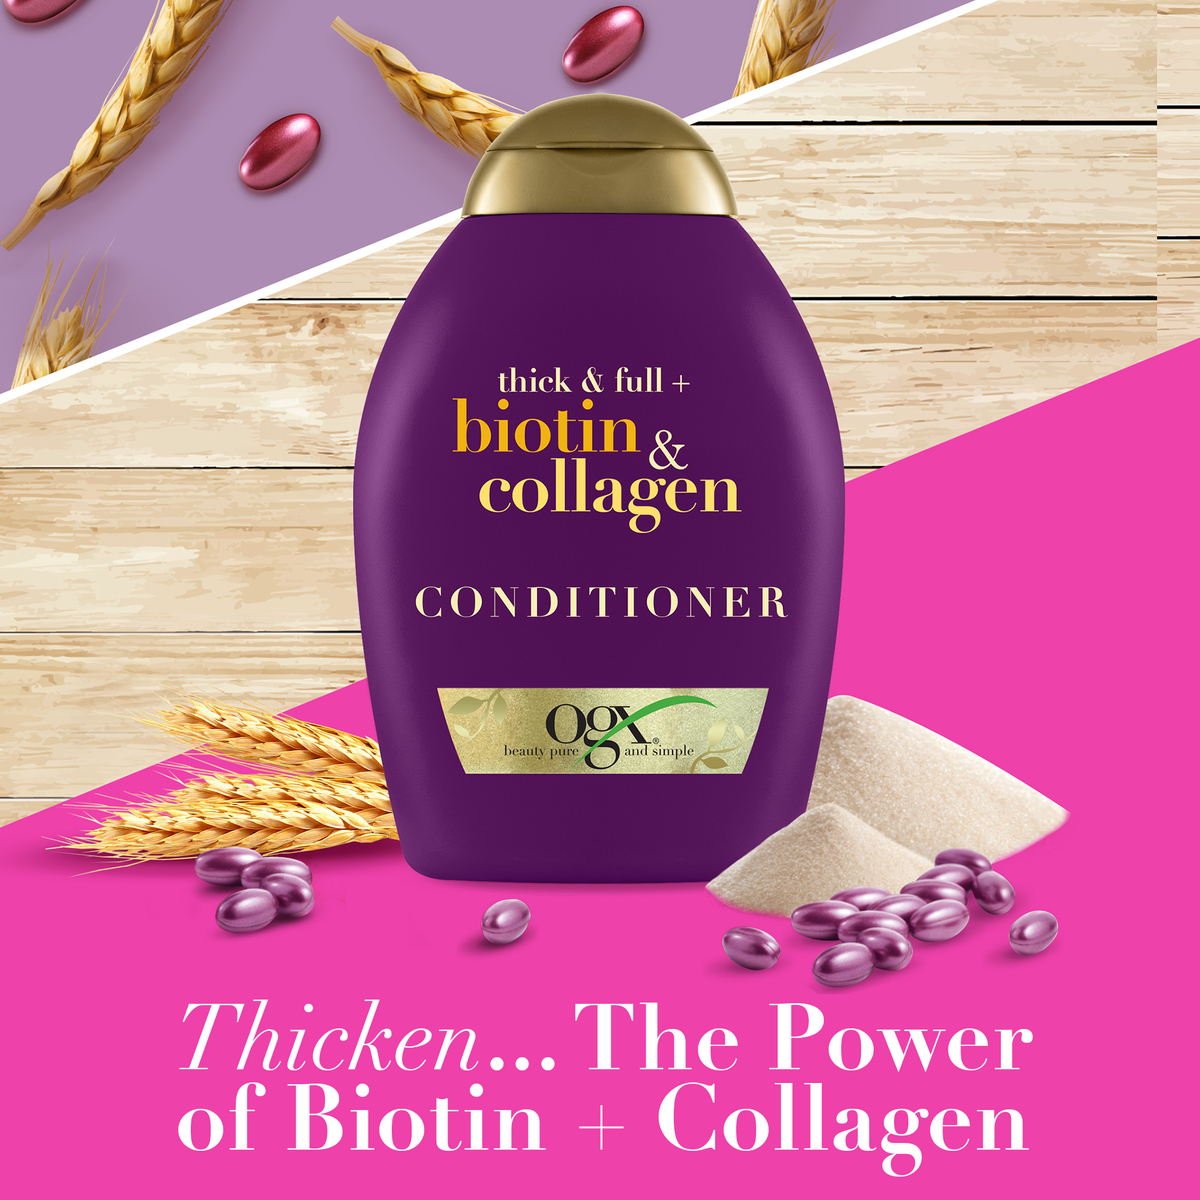 Ogx Conditioner Thick & Full + Biotin & Collagen 385 ml